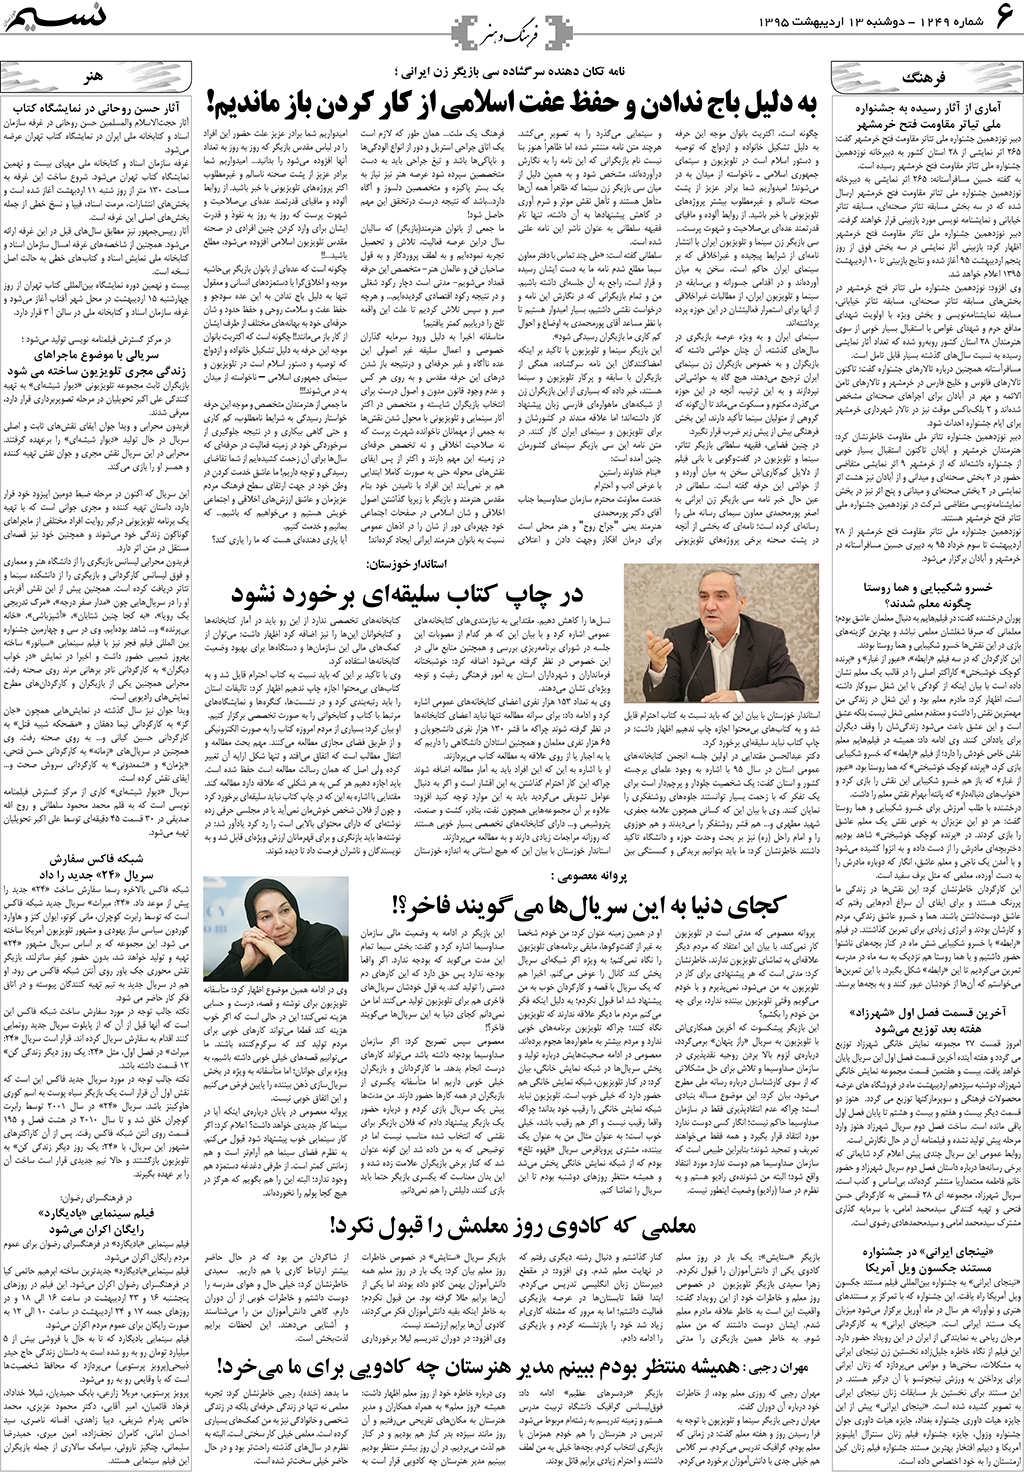 صفحه فرهنگ و هنر روزنامه نسیم شماره 1249